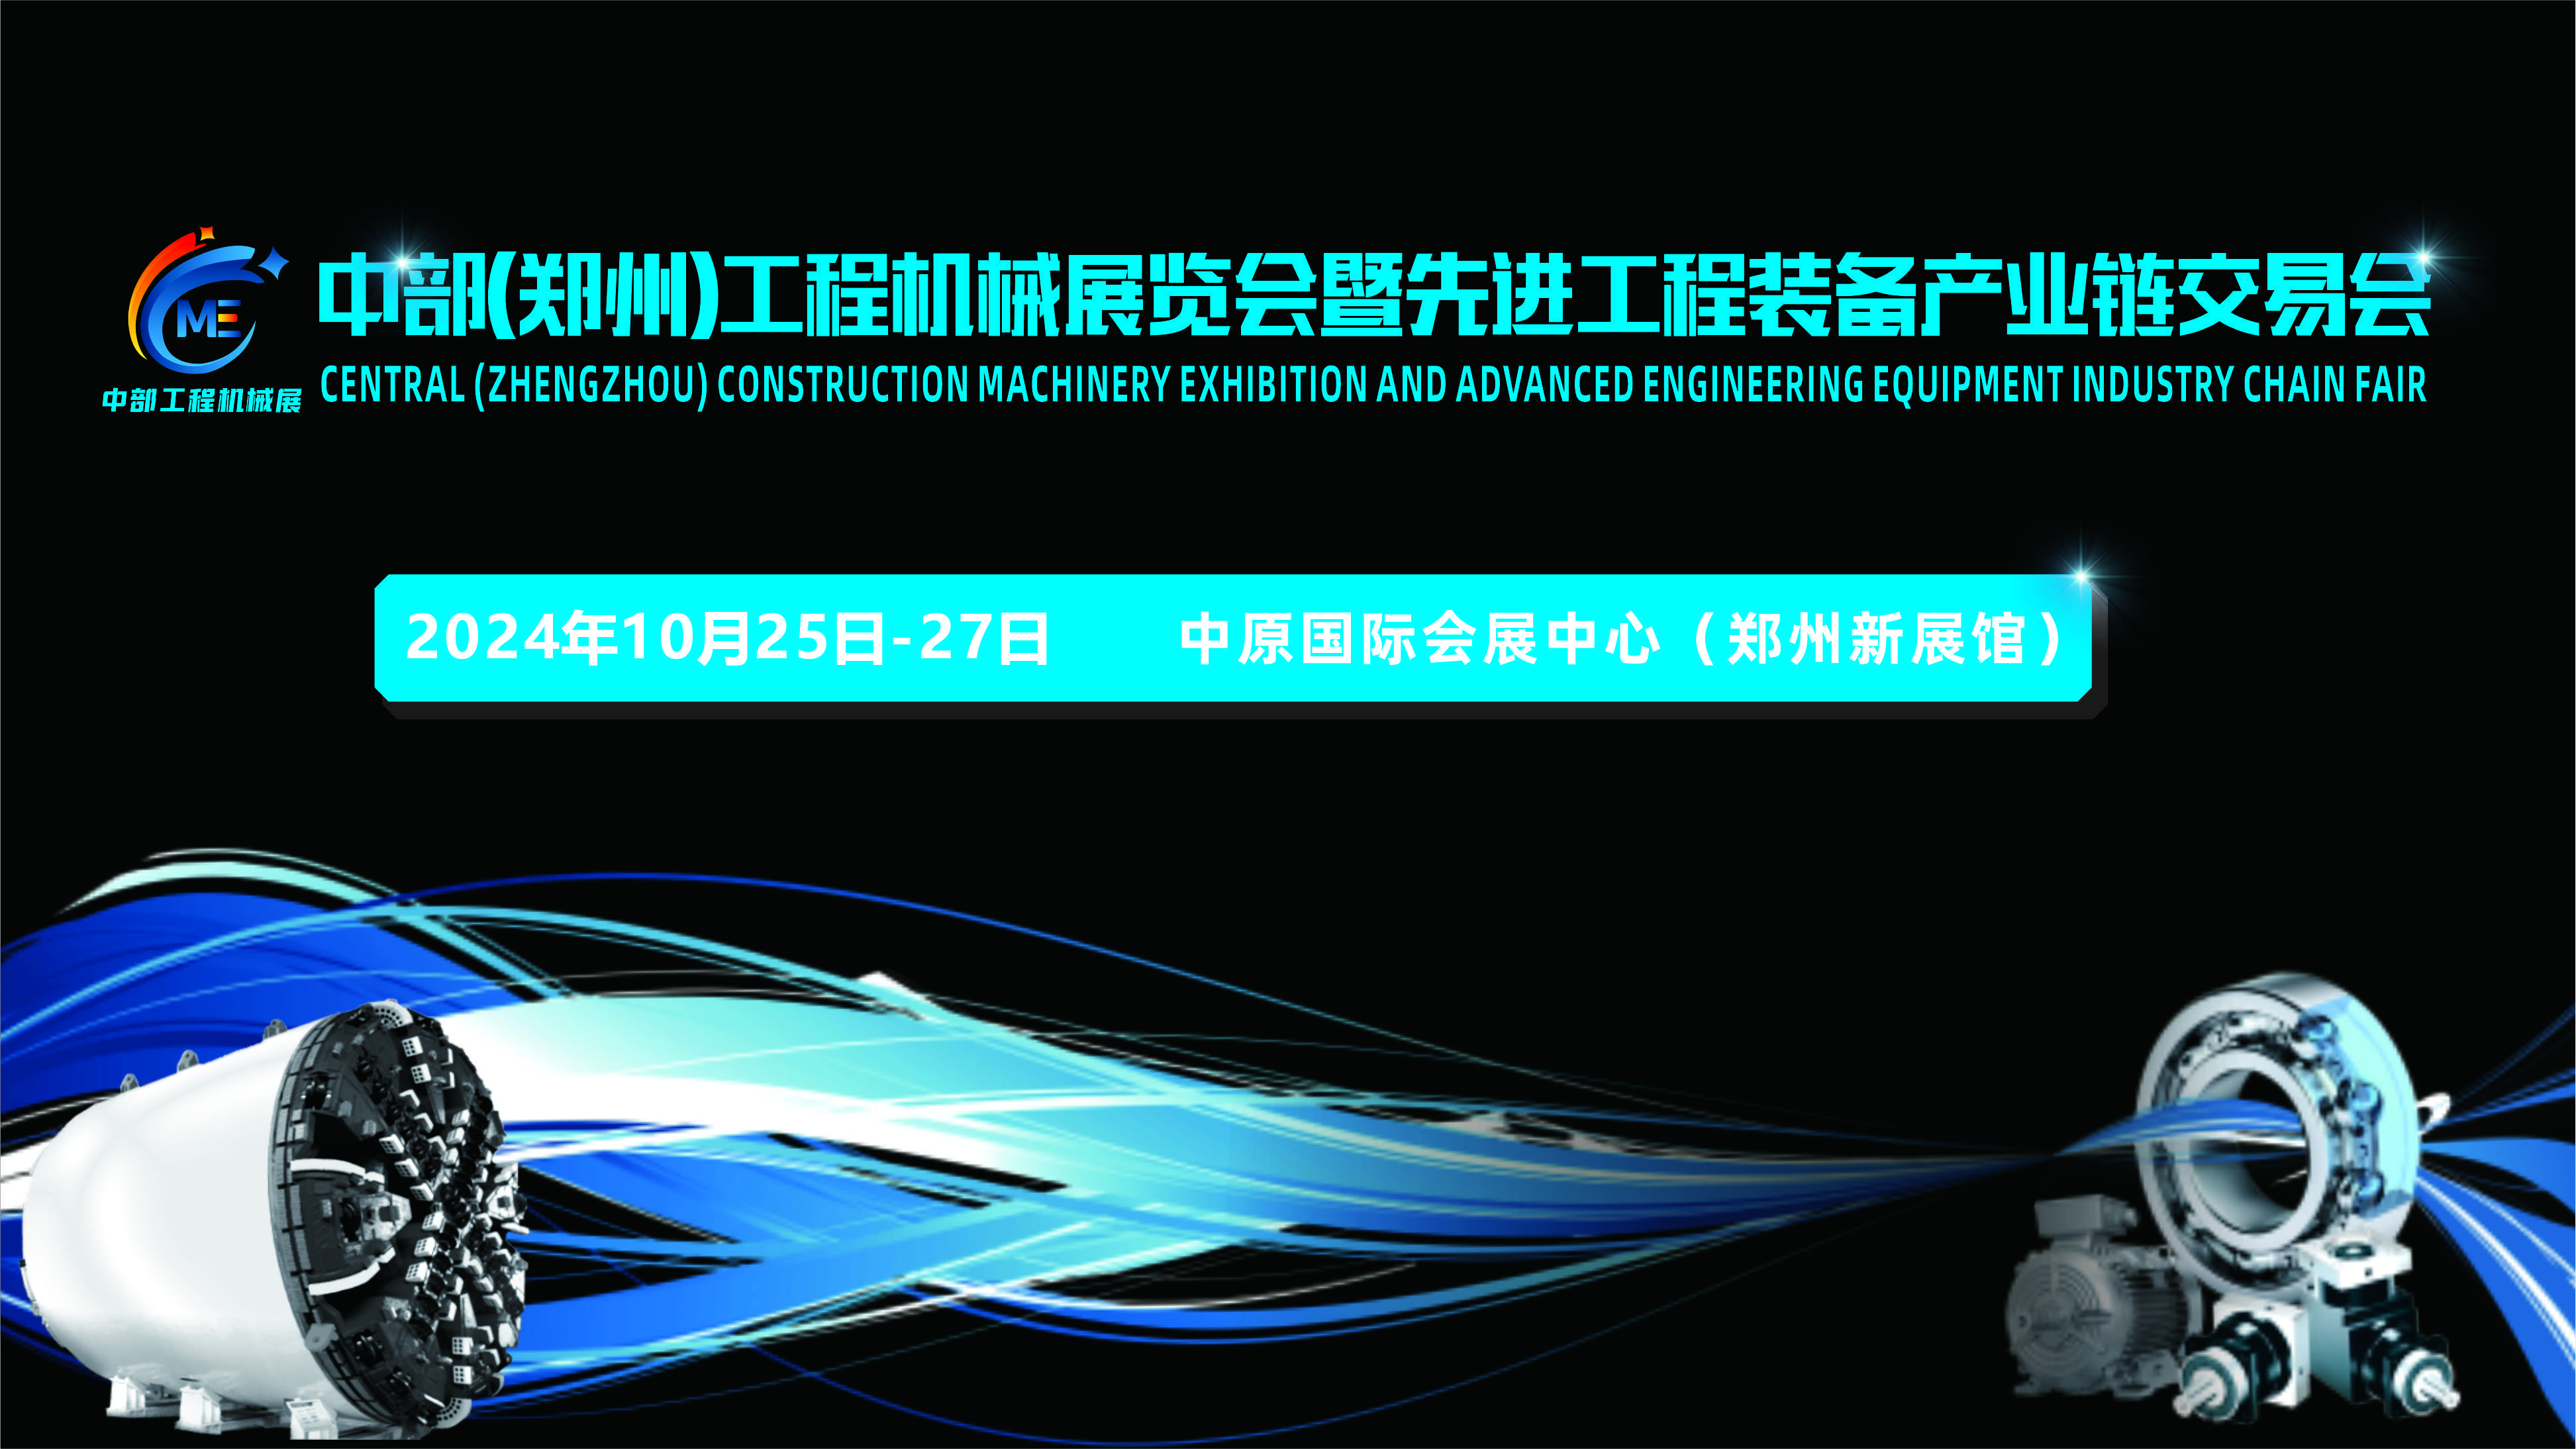 2024中部（郑州）工程机械展览会 暨先进工程装备产业链交易会